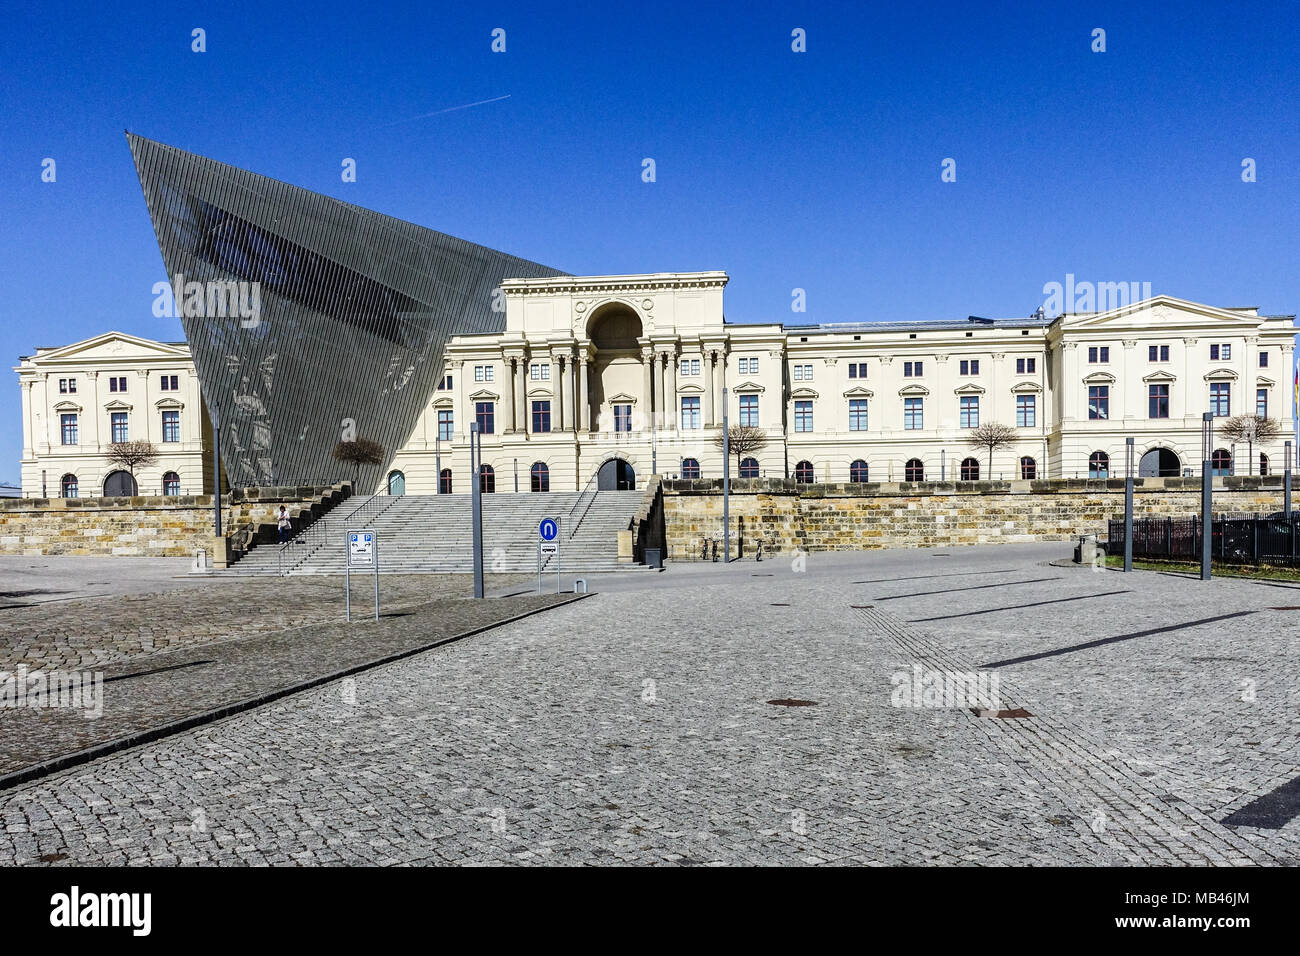 Militärhistorisches Museum der Bundeswehr, Dresden Moderne Architektur nach dem Entwurf des Architekten Daniel Libeskind Stockfoto